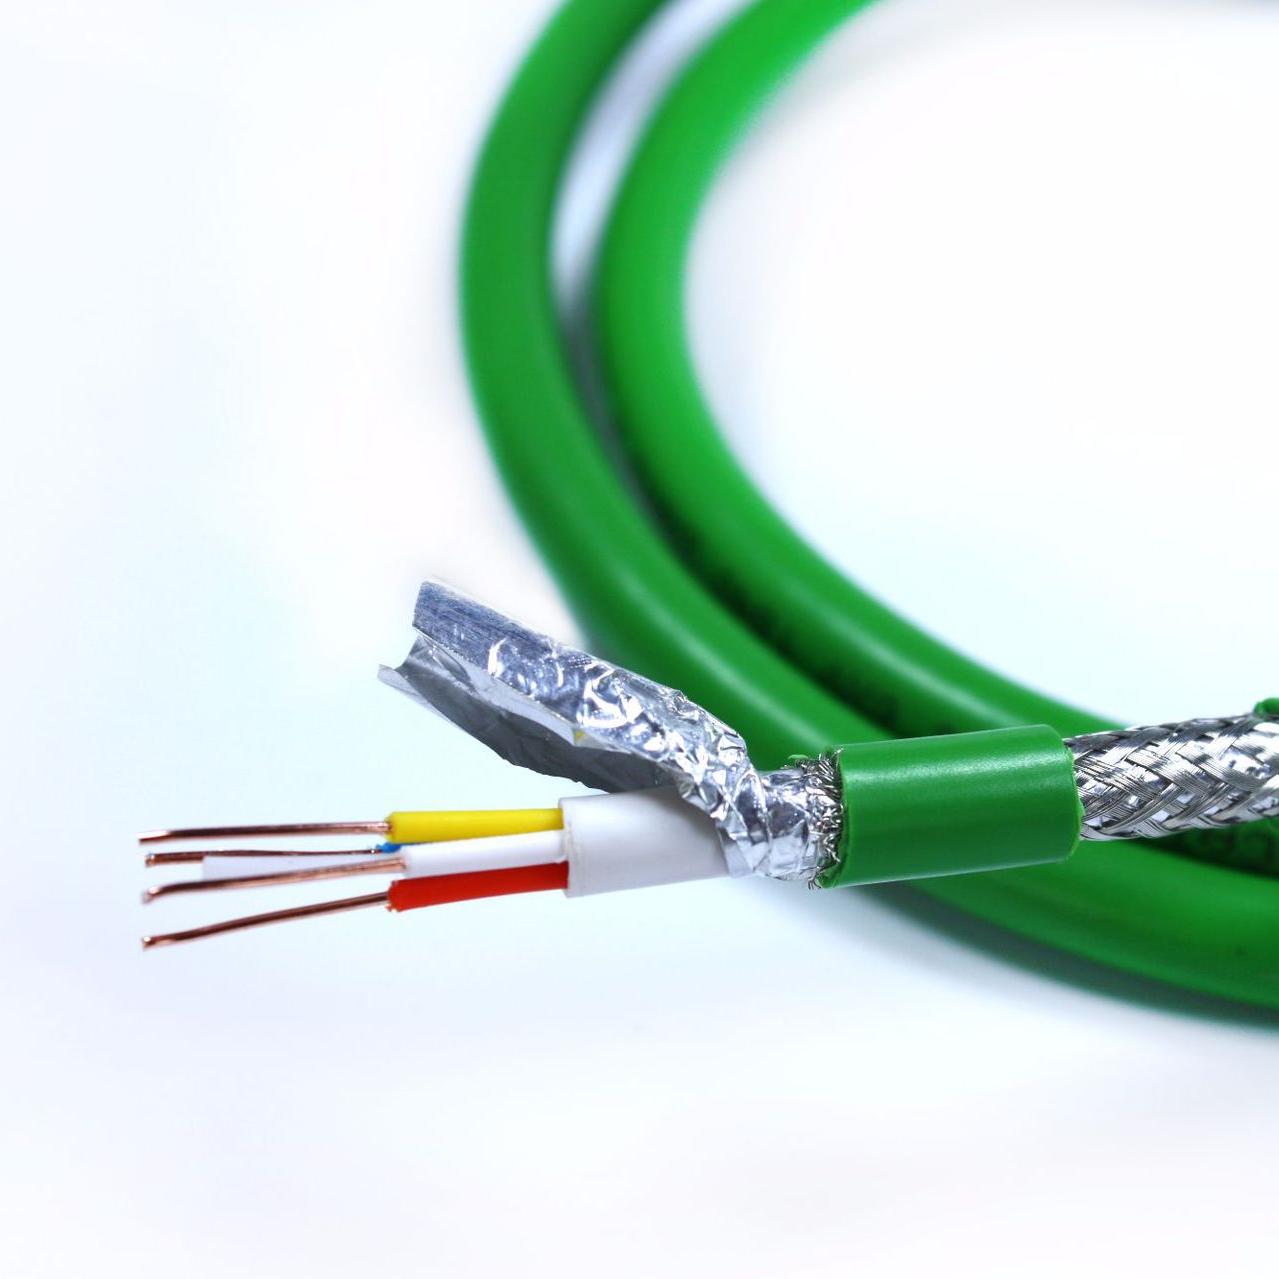 柔性通讯电缆,PROFINET CABLE电缆